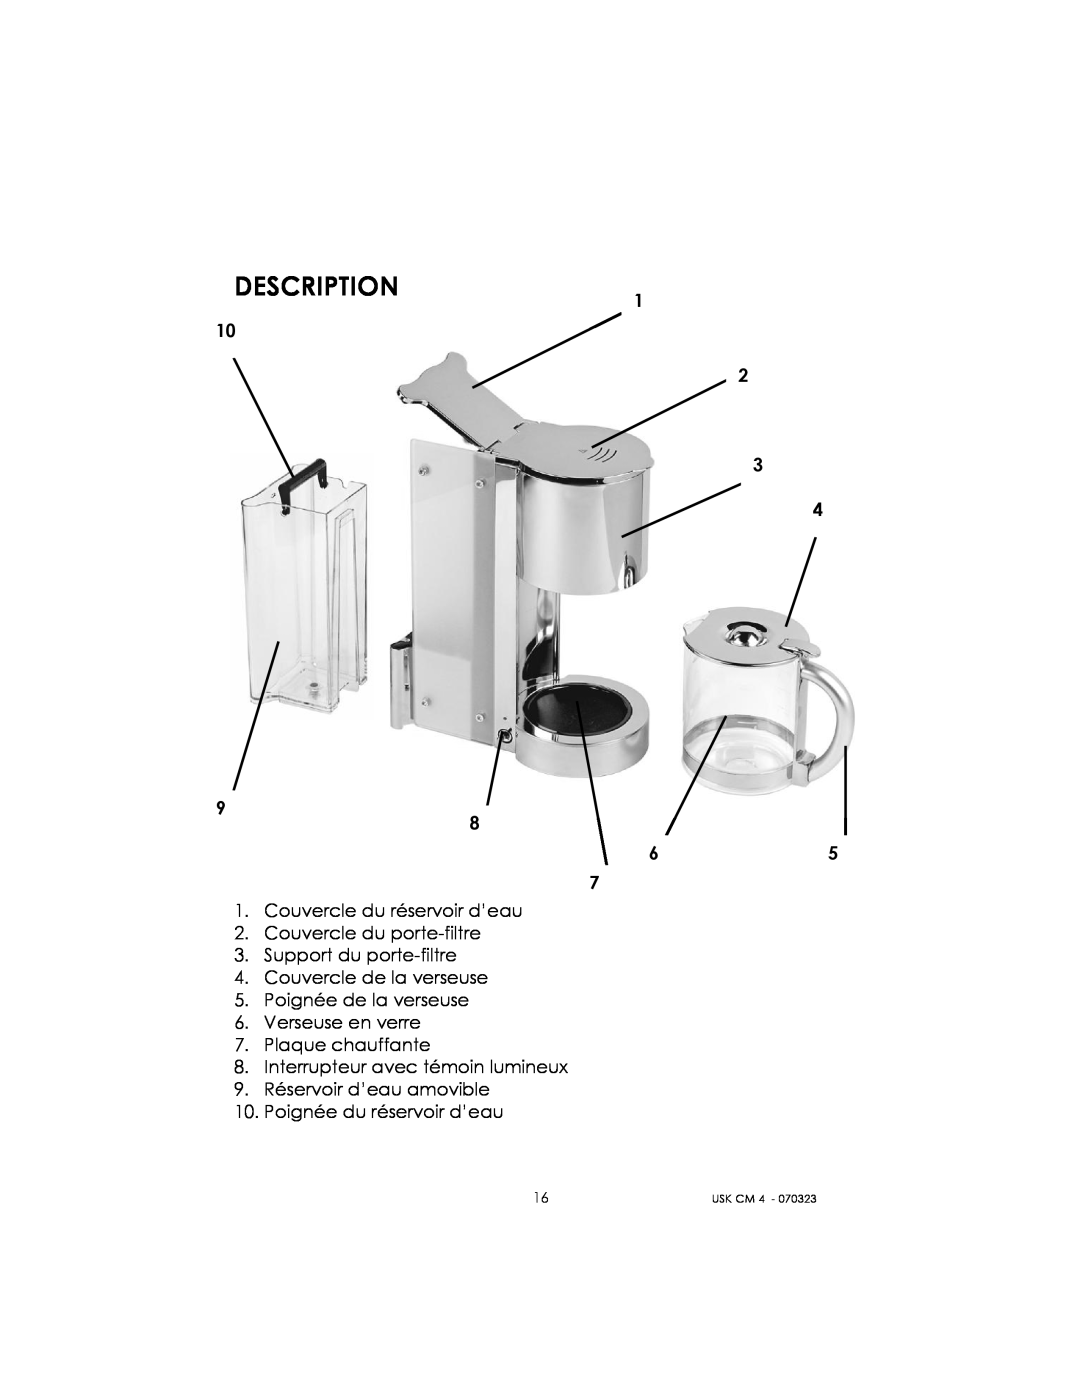 Kalorik USK CM 4 manual Description, Couvercle du réservoir d’eau 2. Couvercle du porte-filtre, Poignée du réservoir d’eau 